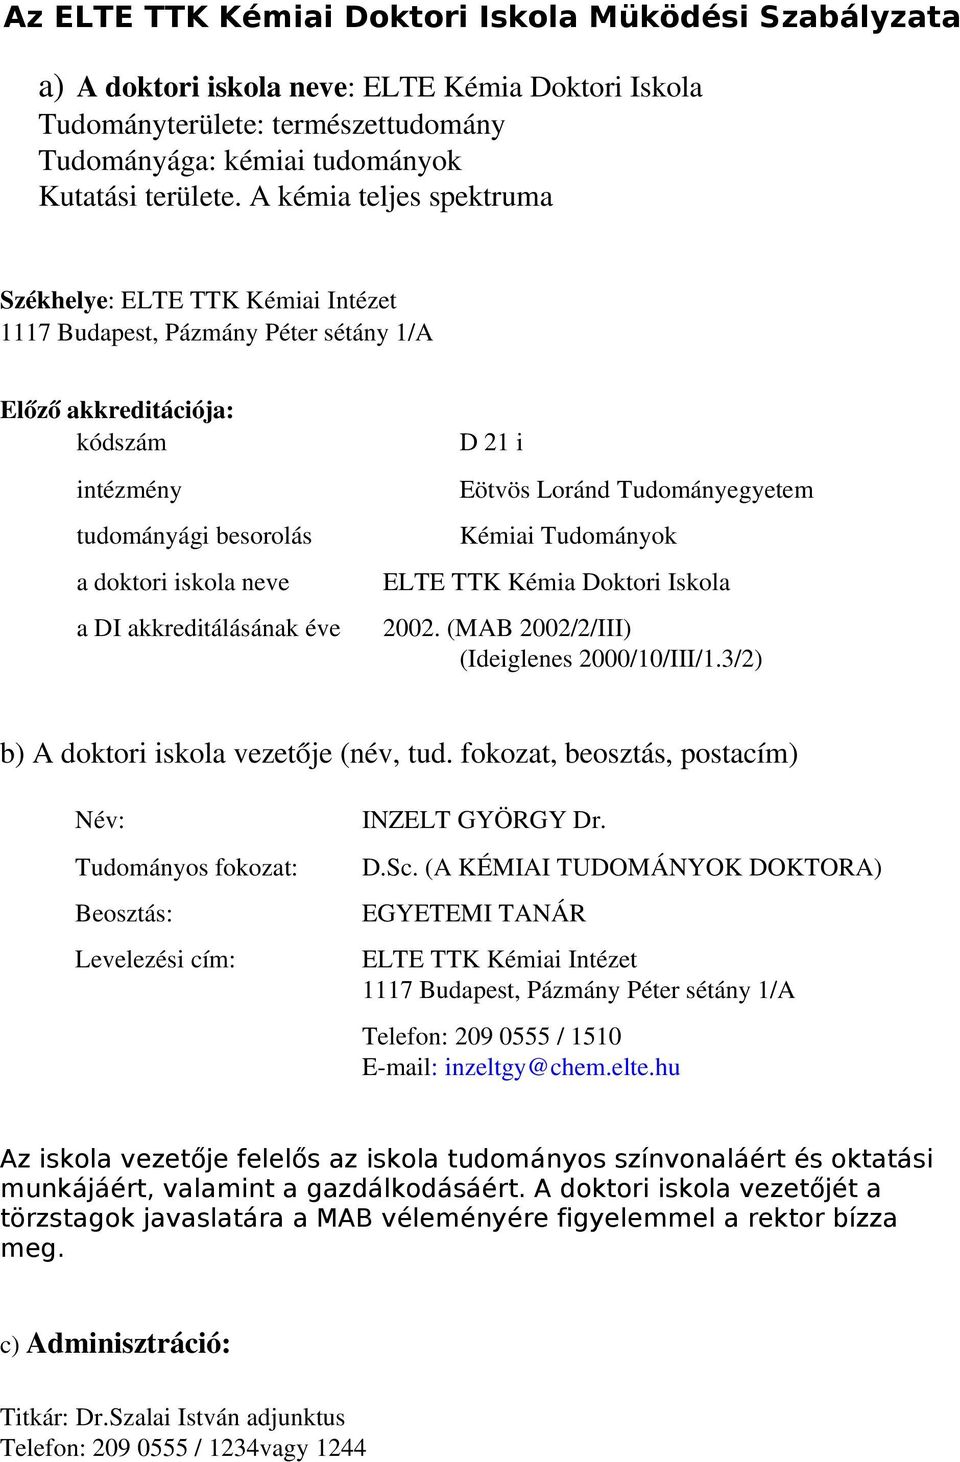 akkreditálásának éve D 21 i Eötvös Loránd Tudományegyetem Kémiai Tudományok ELTE TTK Kémia Doktori Iskola 2002. (MAB 2002/2/III) (Ideiglenes 2000/10/III/1.3/2) b) A doktori iskola vezetője (név, tud.